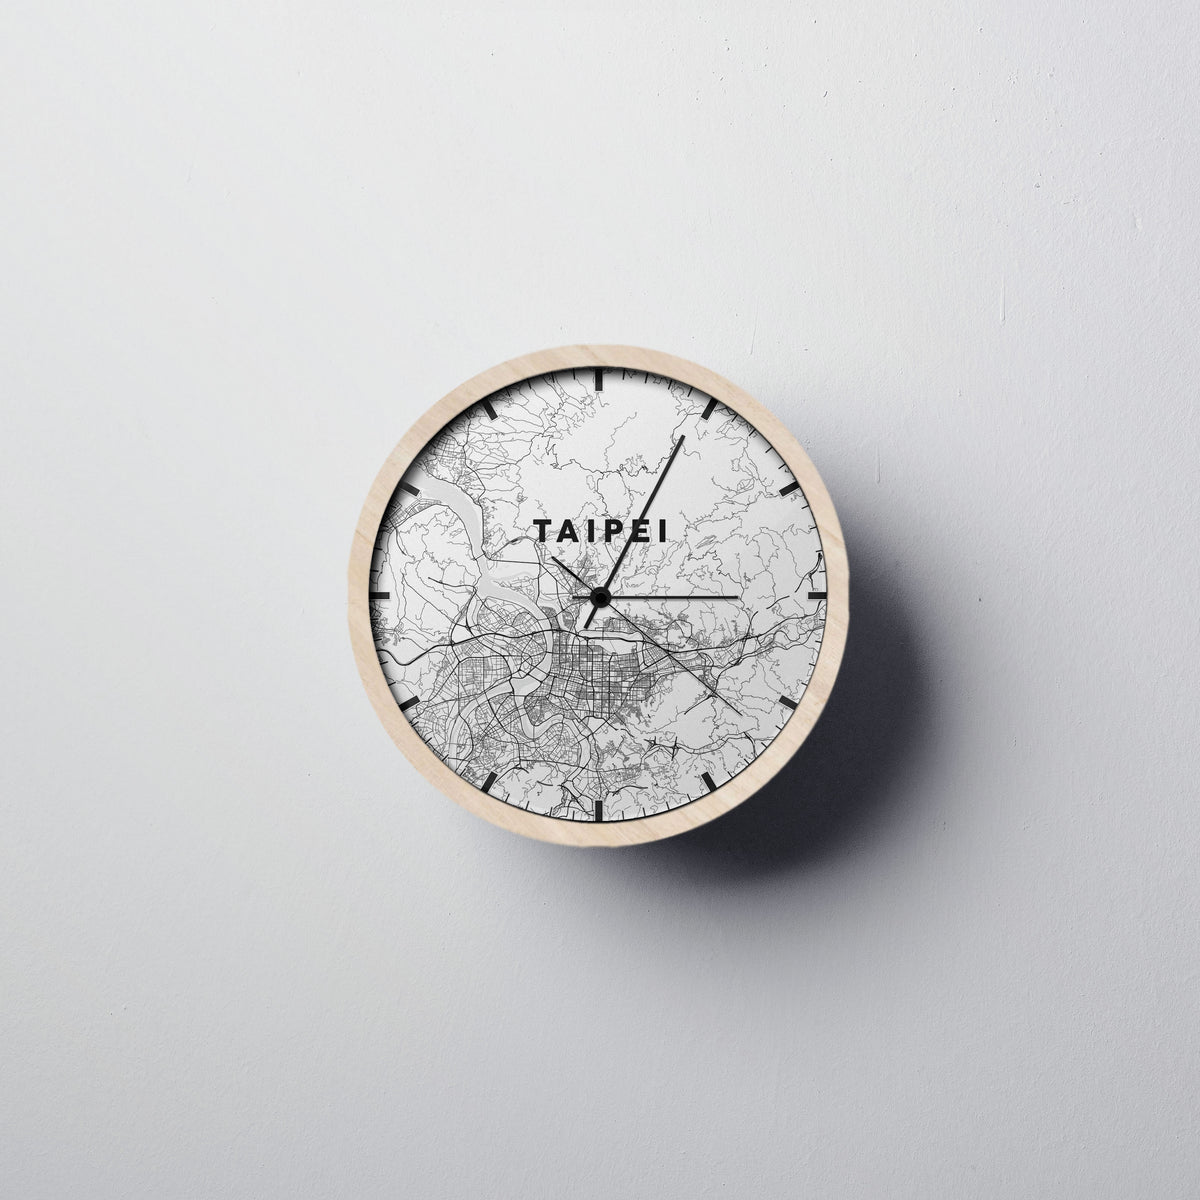 Taipei Wall Clock